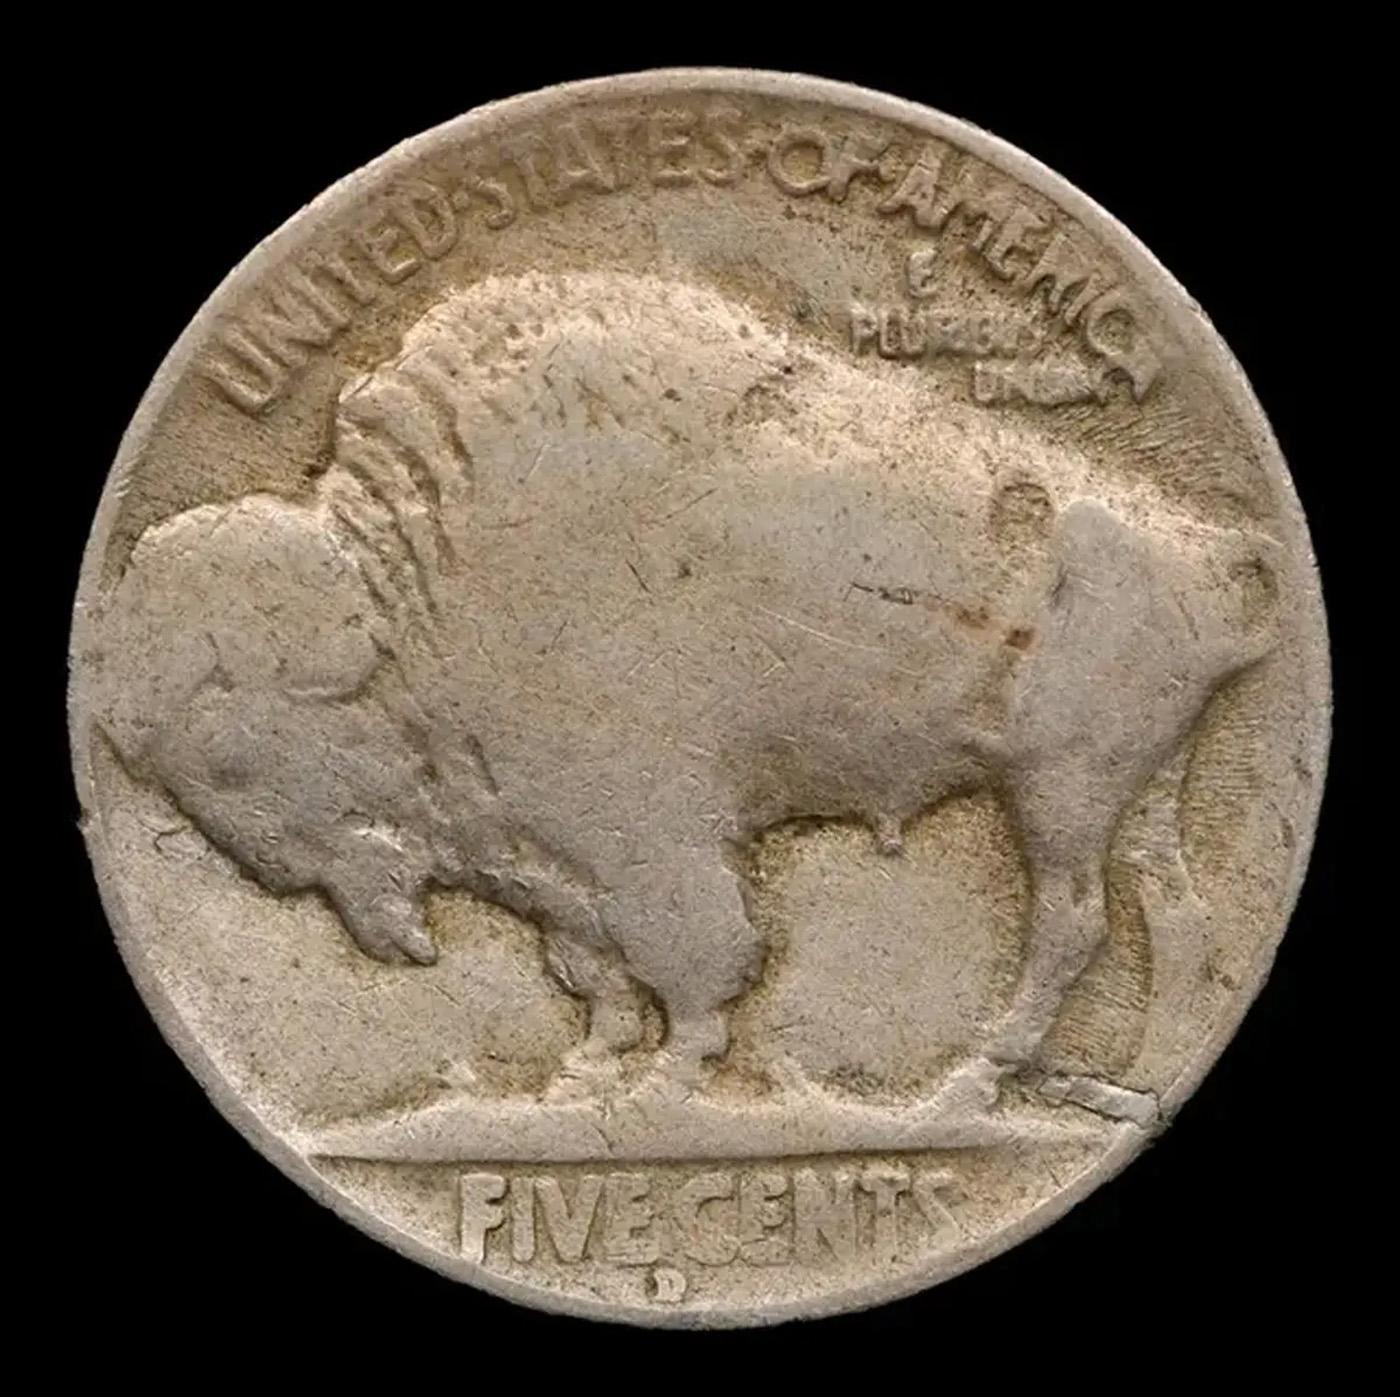 1925-d Buffalo Nickel 5c Grades f, fine